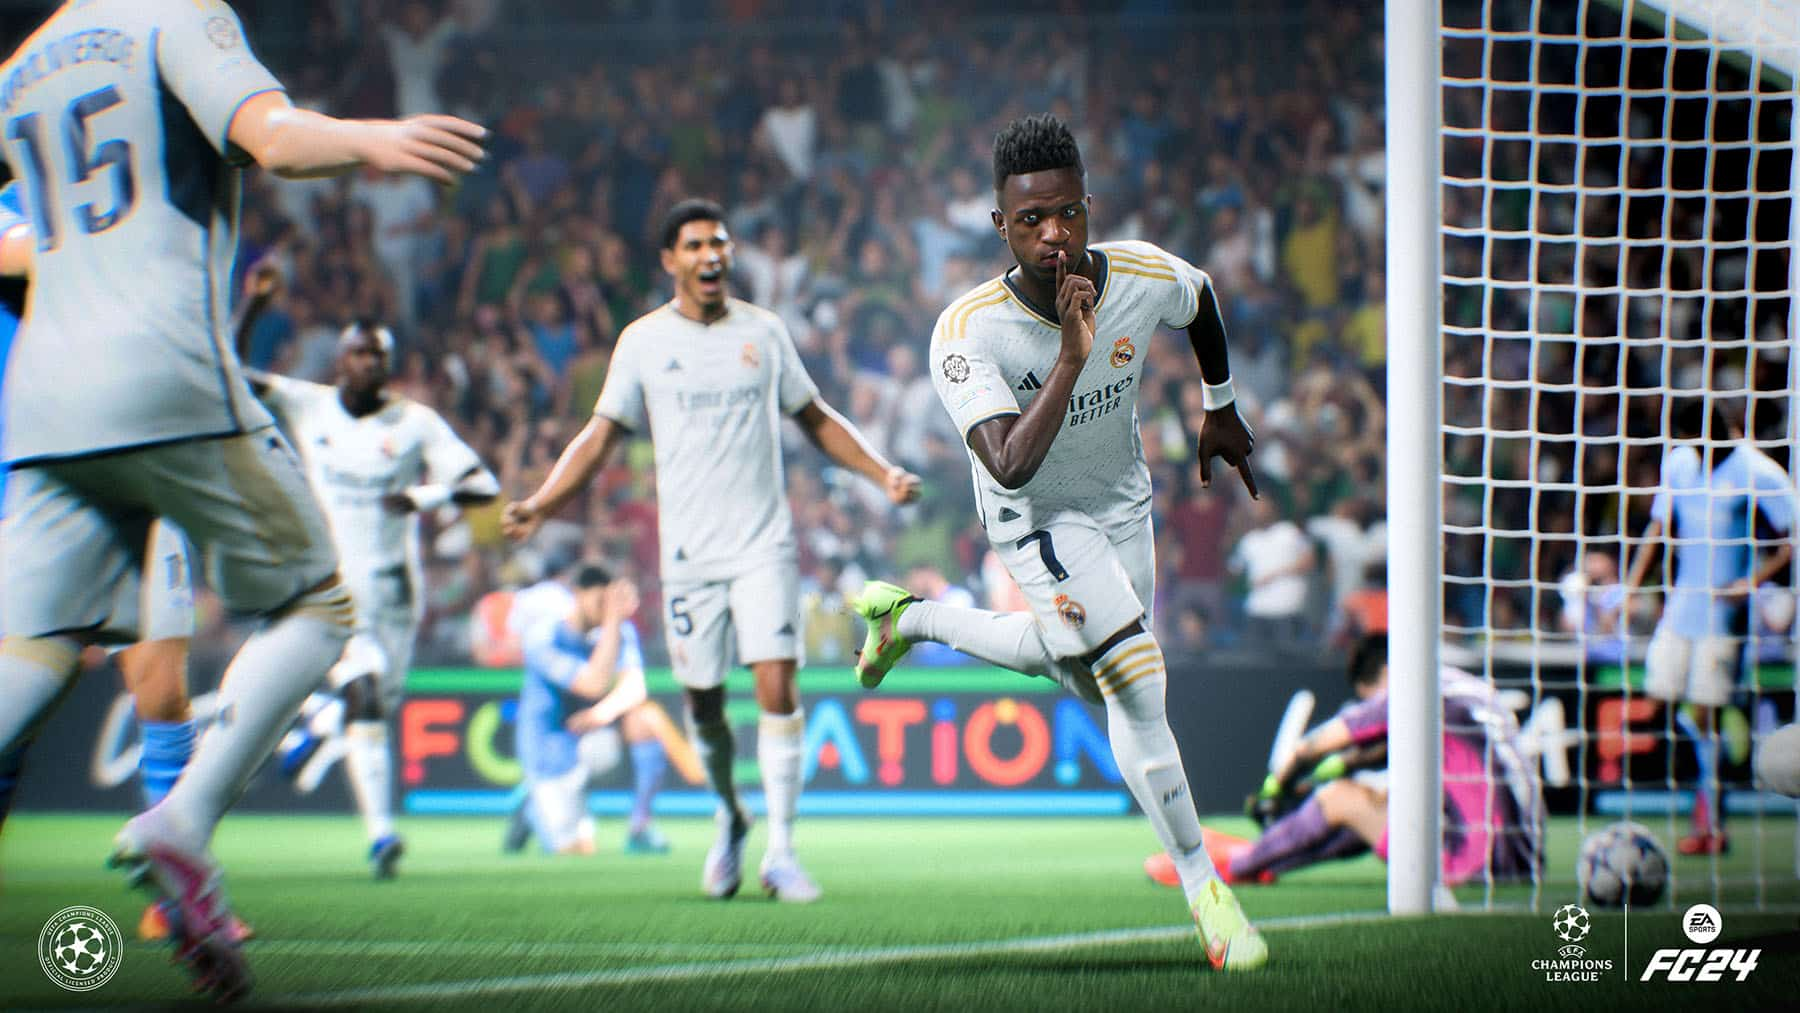 FIFA 22: confira os 10 melhores meio-campistas do jogo, fifa